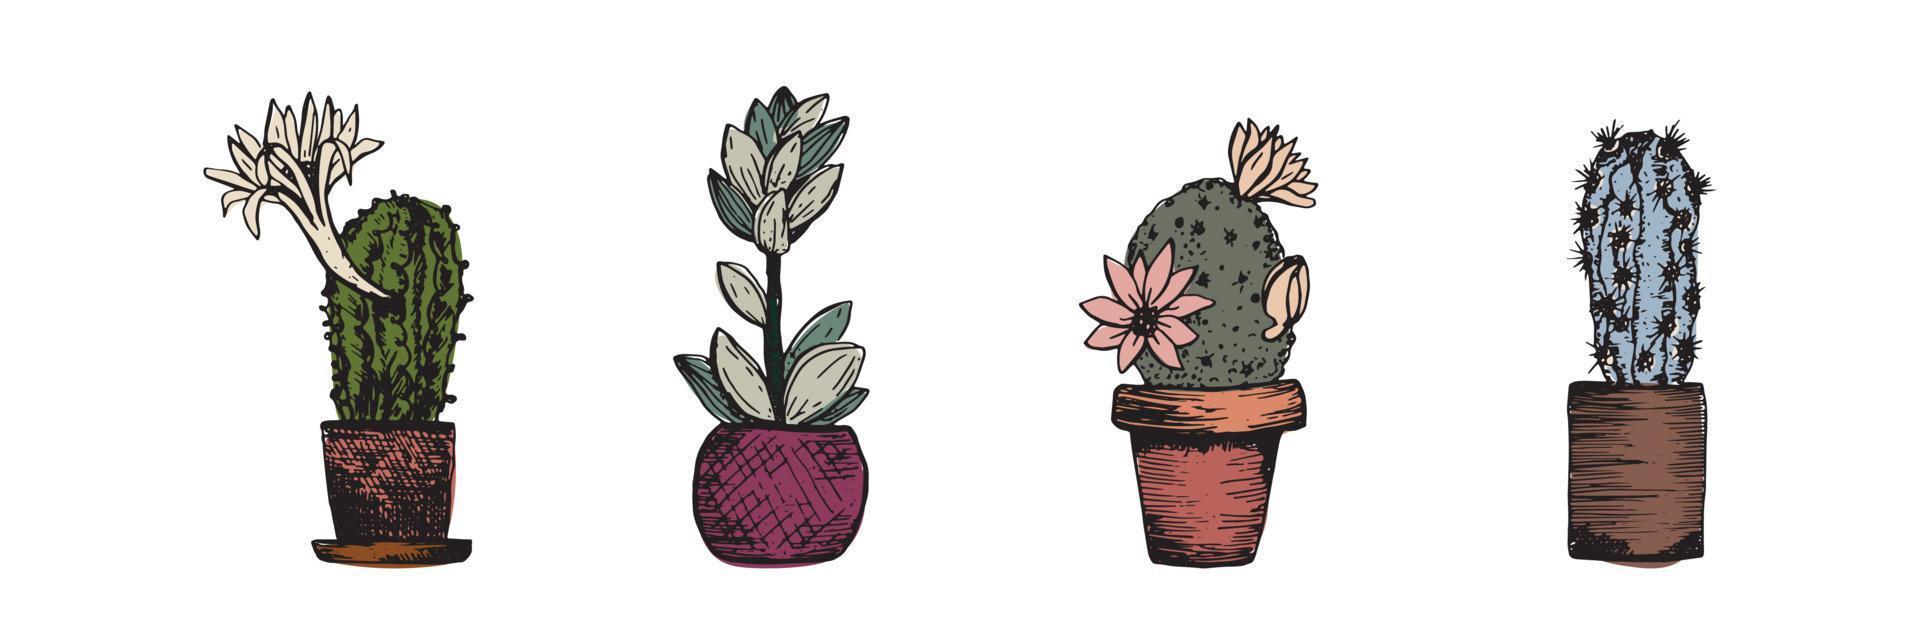 Kaktus-Skizze. zimmerpflanzen in töpfen set sammlung. Hobby zu Hause. Botanik Dekoration für den Innenraum. Vektorillustration auf weißem Hintergrund vektor